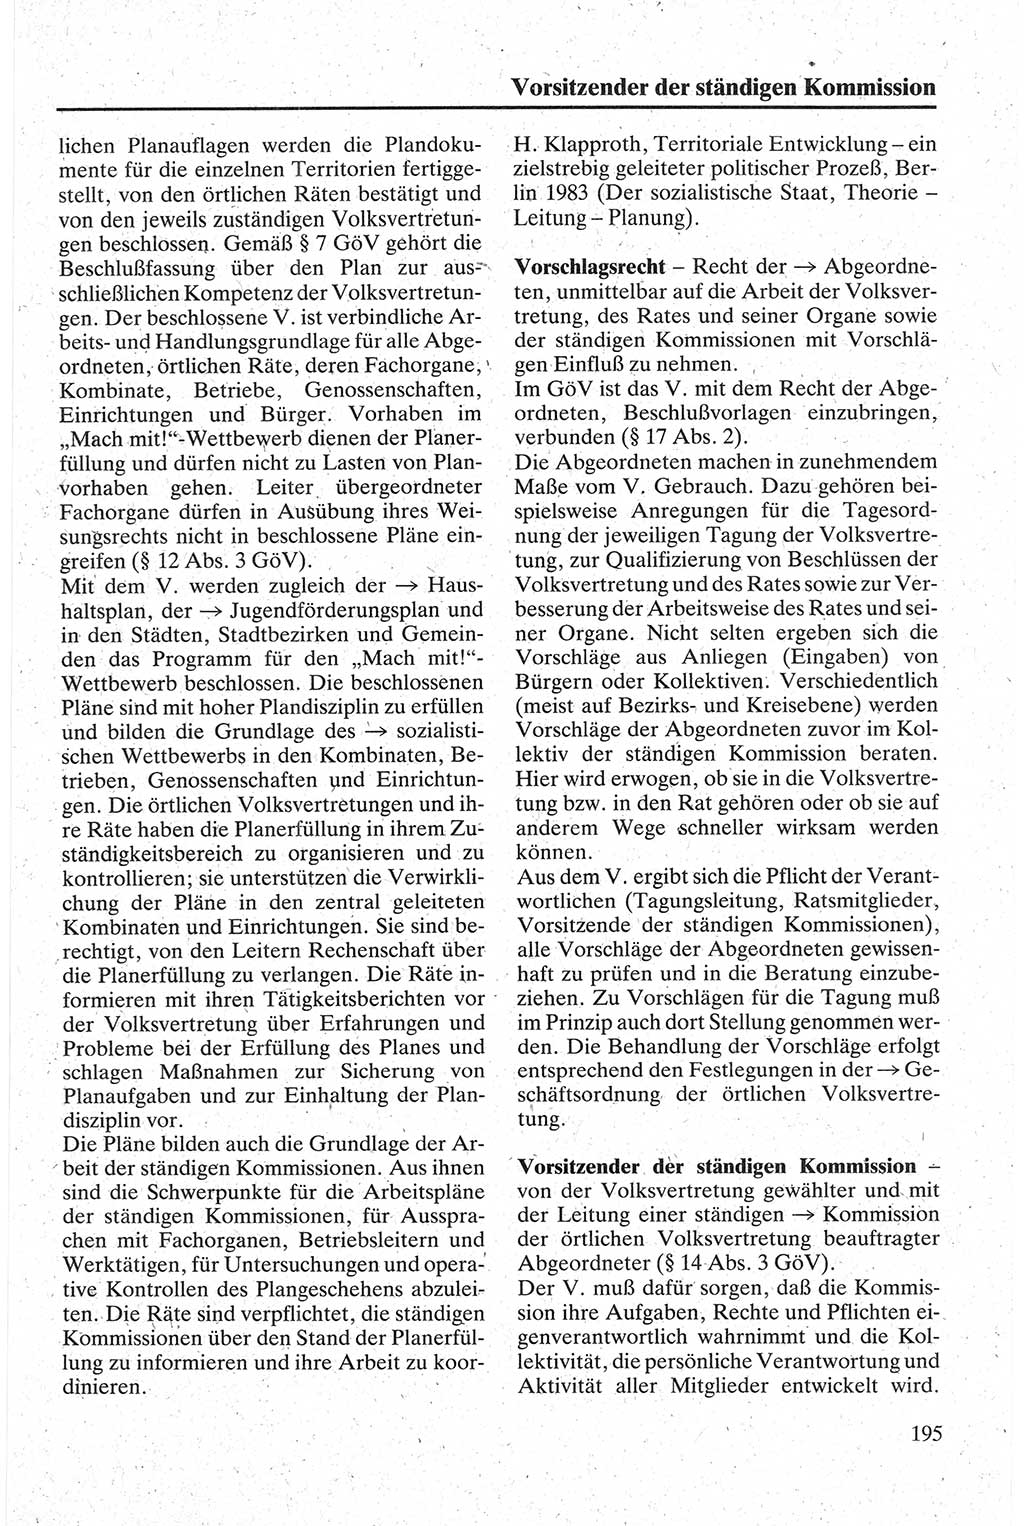 Handbuch für den Abgeordneten [Deutsche Demokratische Republik (DDR)] 1984, Seite 195 (Hb. Abg. DDR 1984, S. 195)